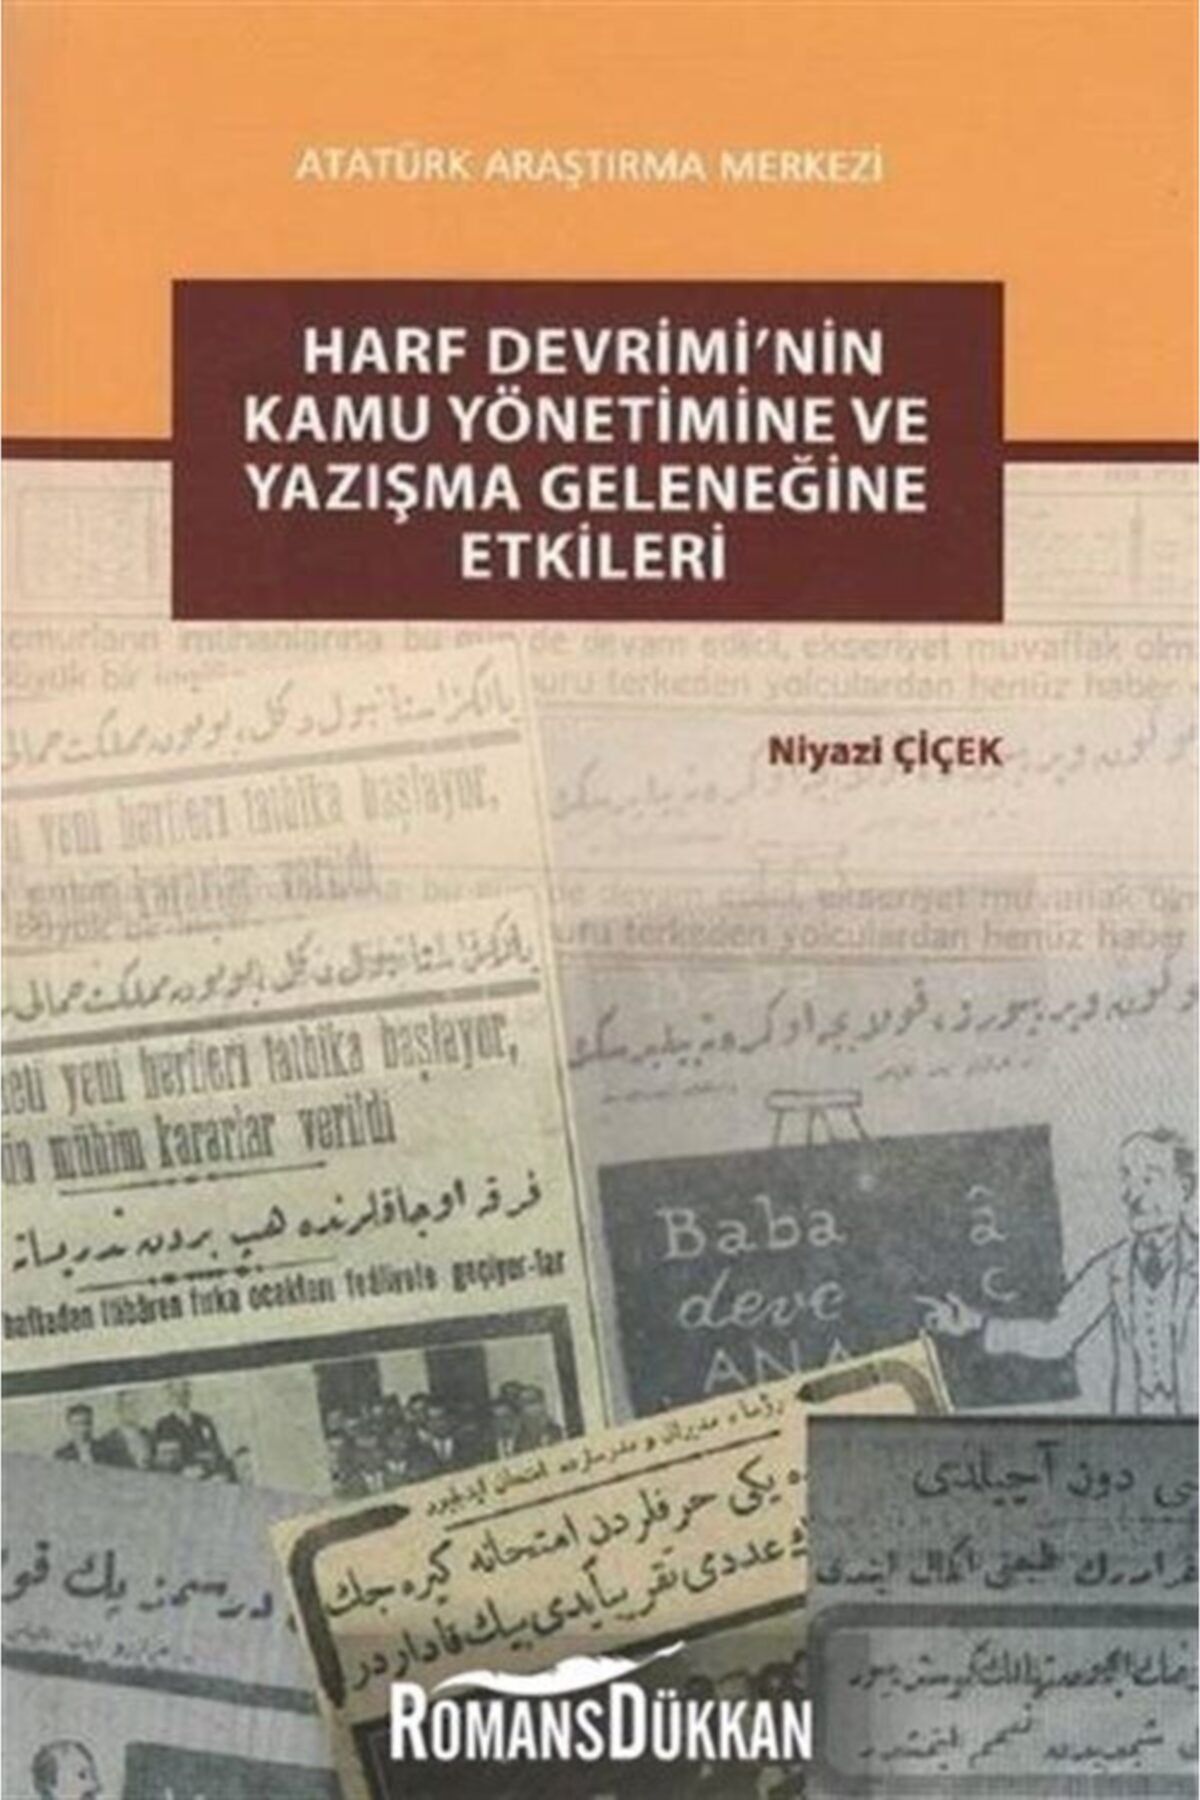 Atatürk Araştırma Merkezi Harf Devrimi'nin Kamu Yönetimine ve Yazışma Geleneğine Etkileri